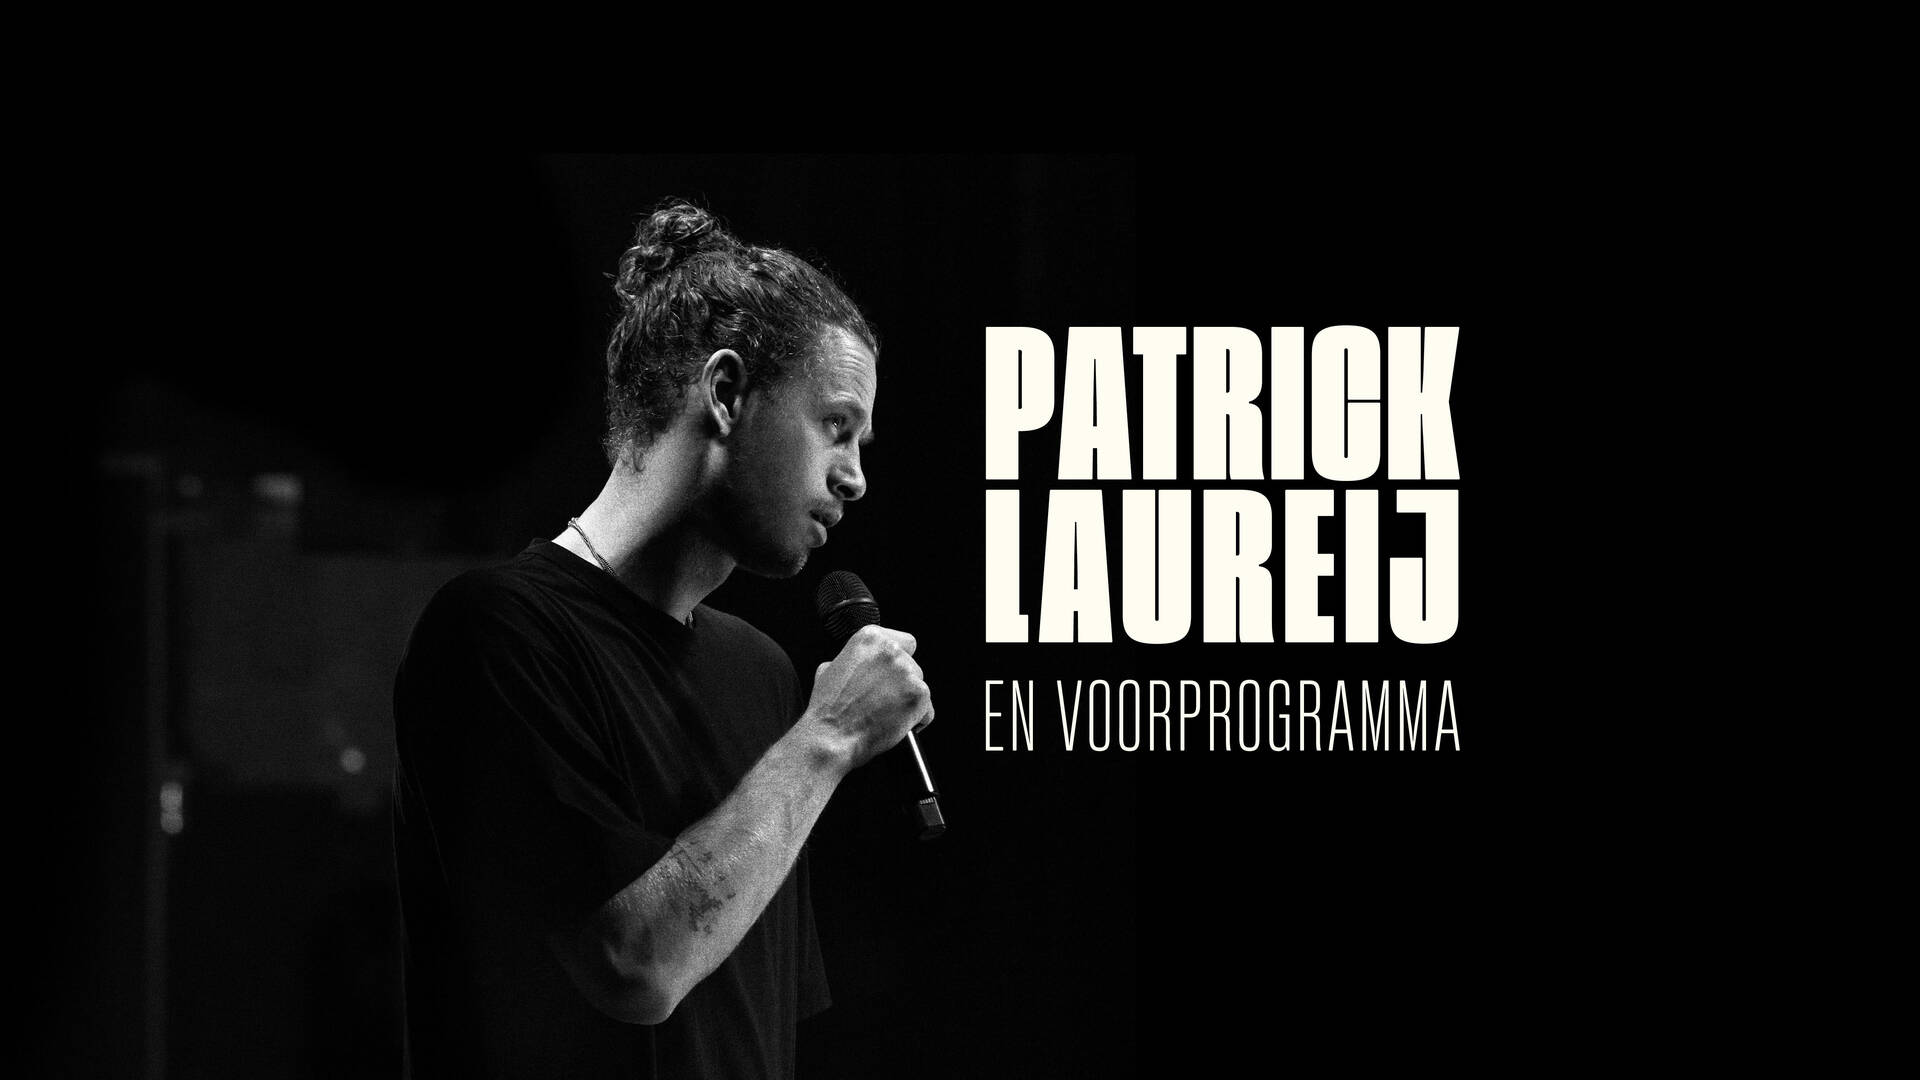 Patrick Laureij